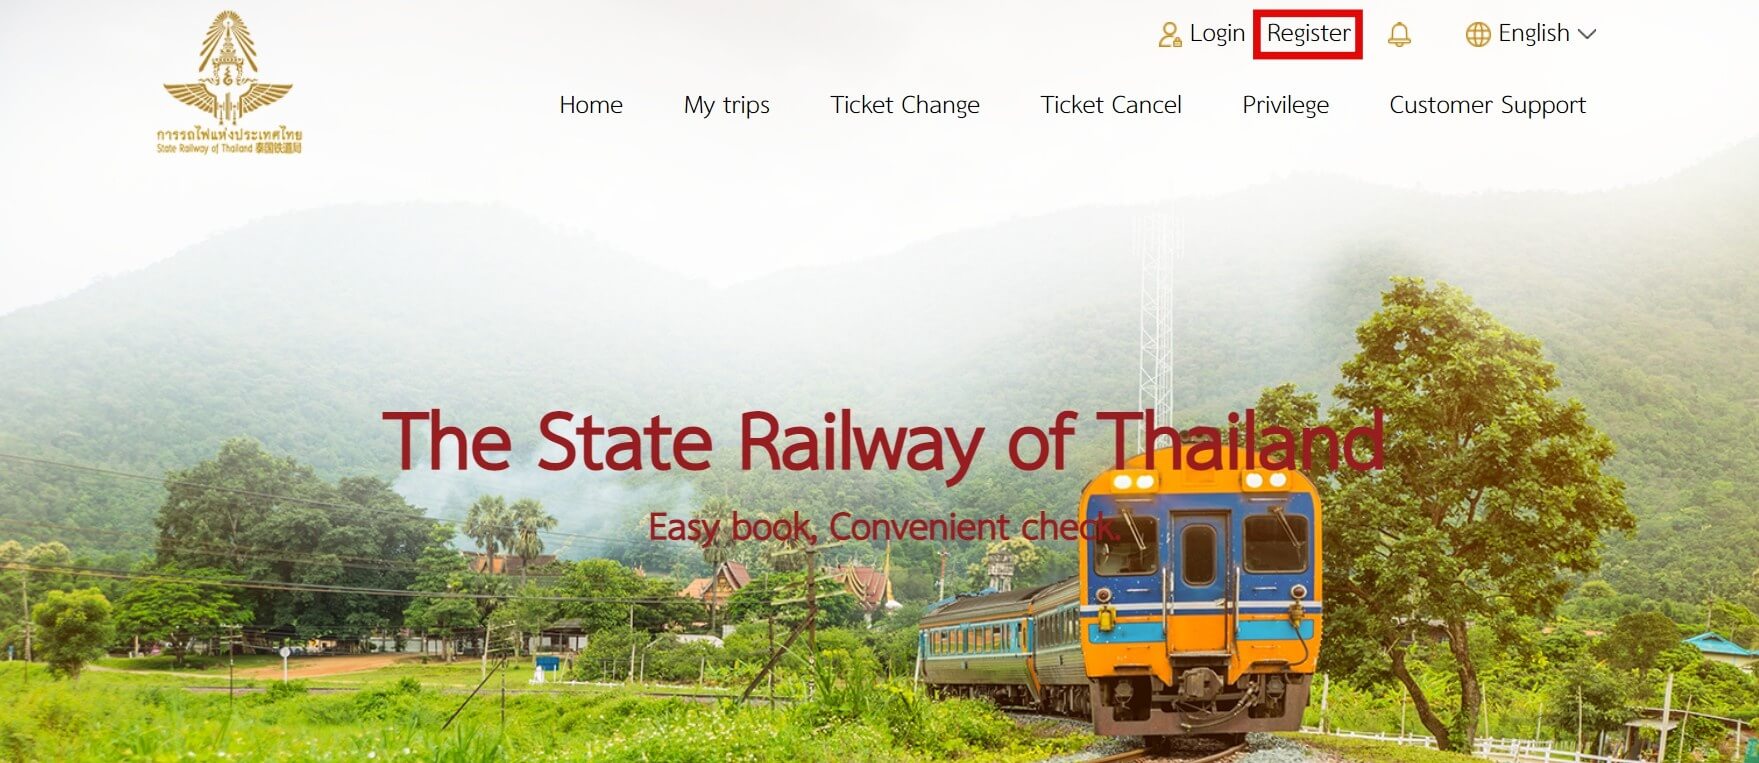 태국 기차 예약 사이트 - 메인 페이지